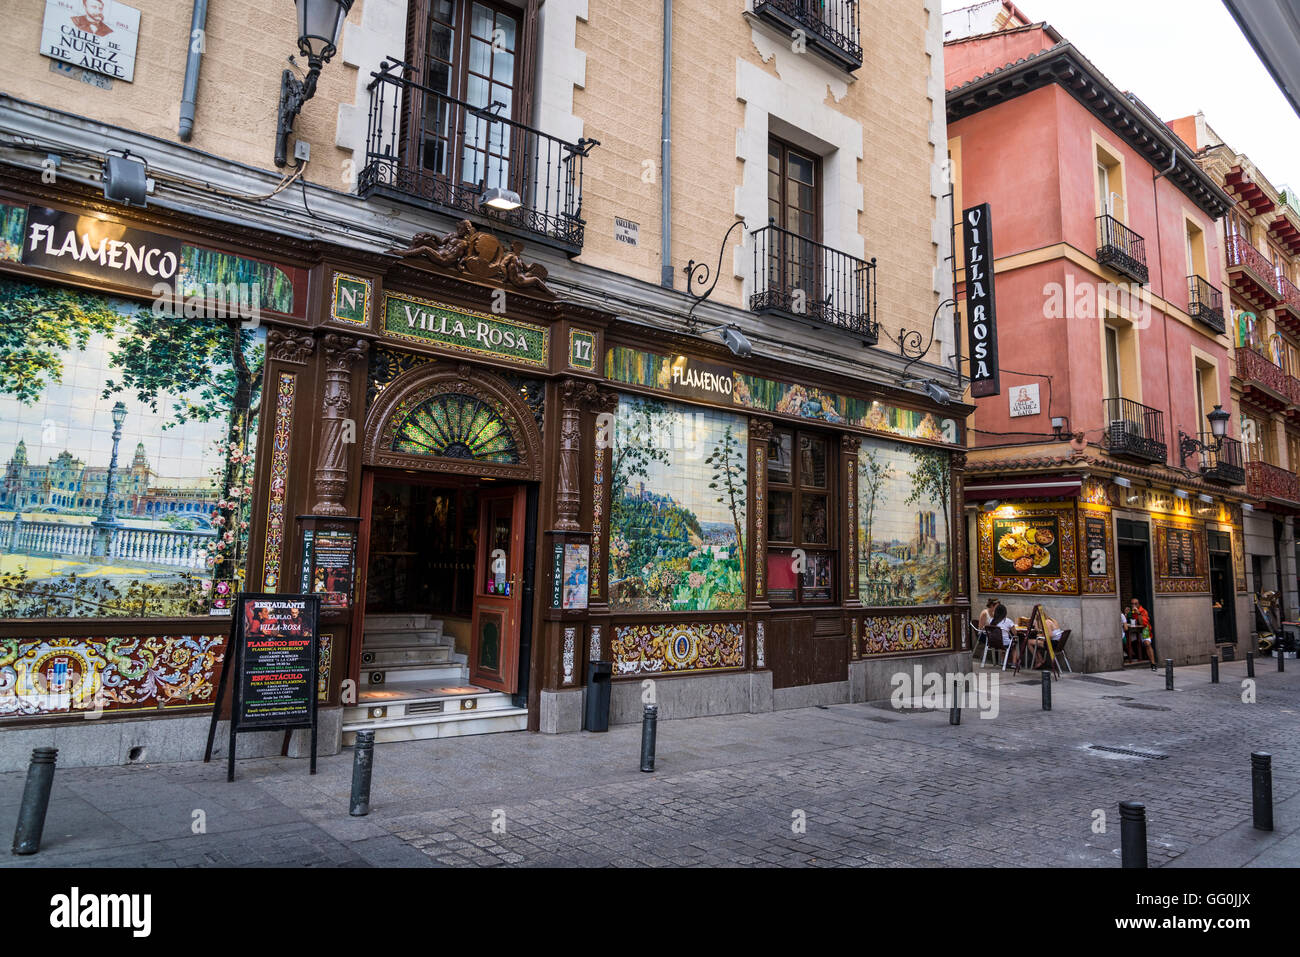 Restaurant traditionnel dans une rue piétonne, dans le quartier de Huertas, Madrid, Espagne Banque D'Images